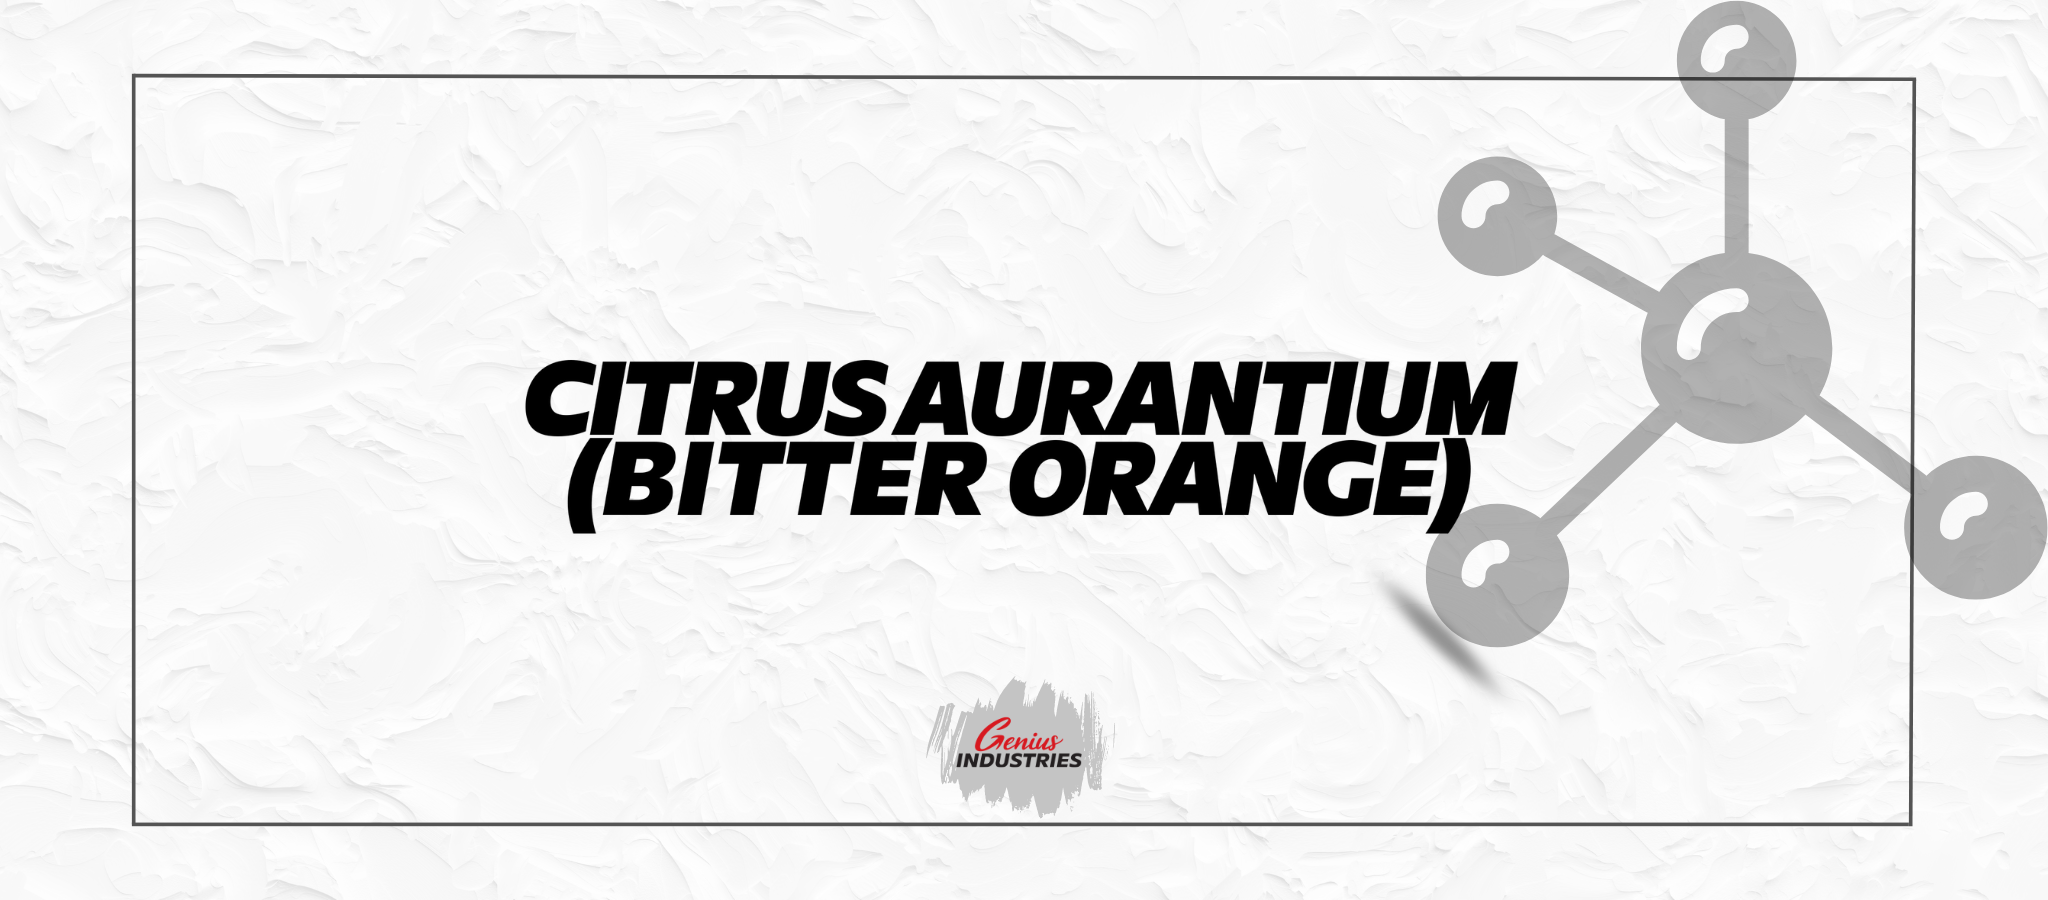 Citrus aurantium supplements for mood enhancement